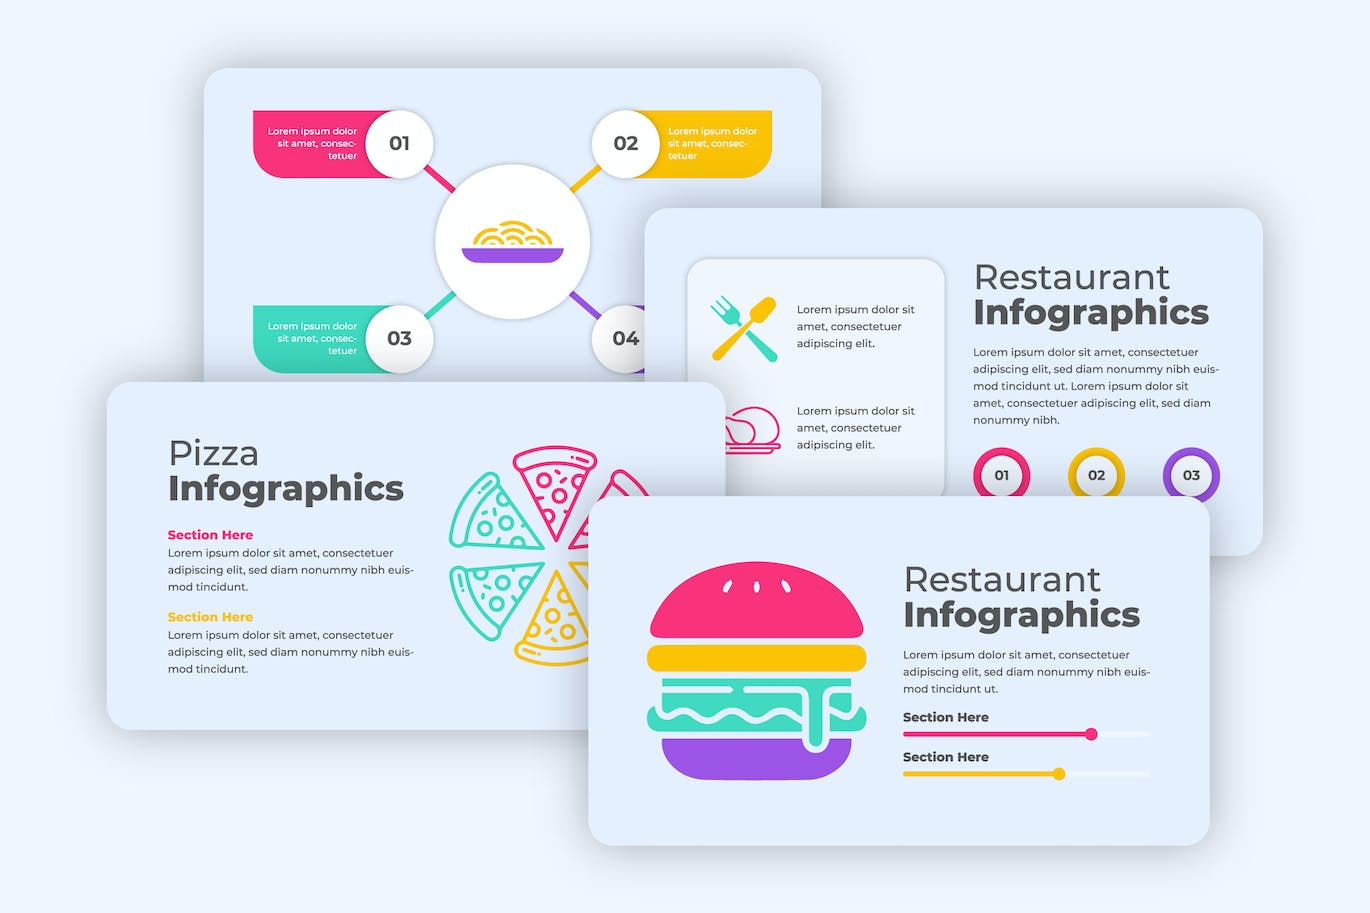 餐厅食品图形信息数据图表设计素材 Restaurant Infographics 幻灯图表 第1张